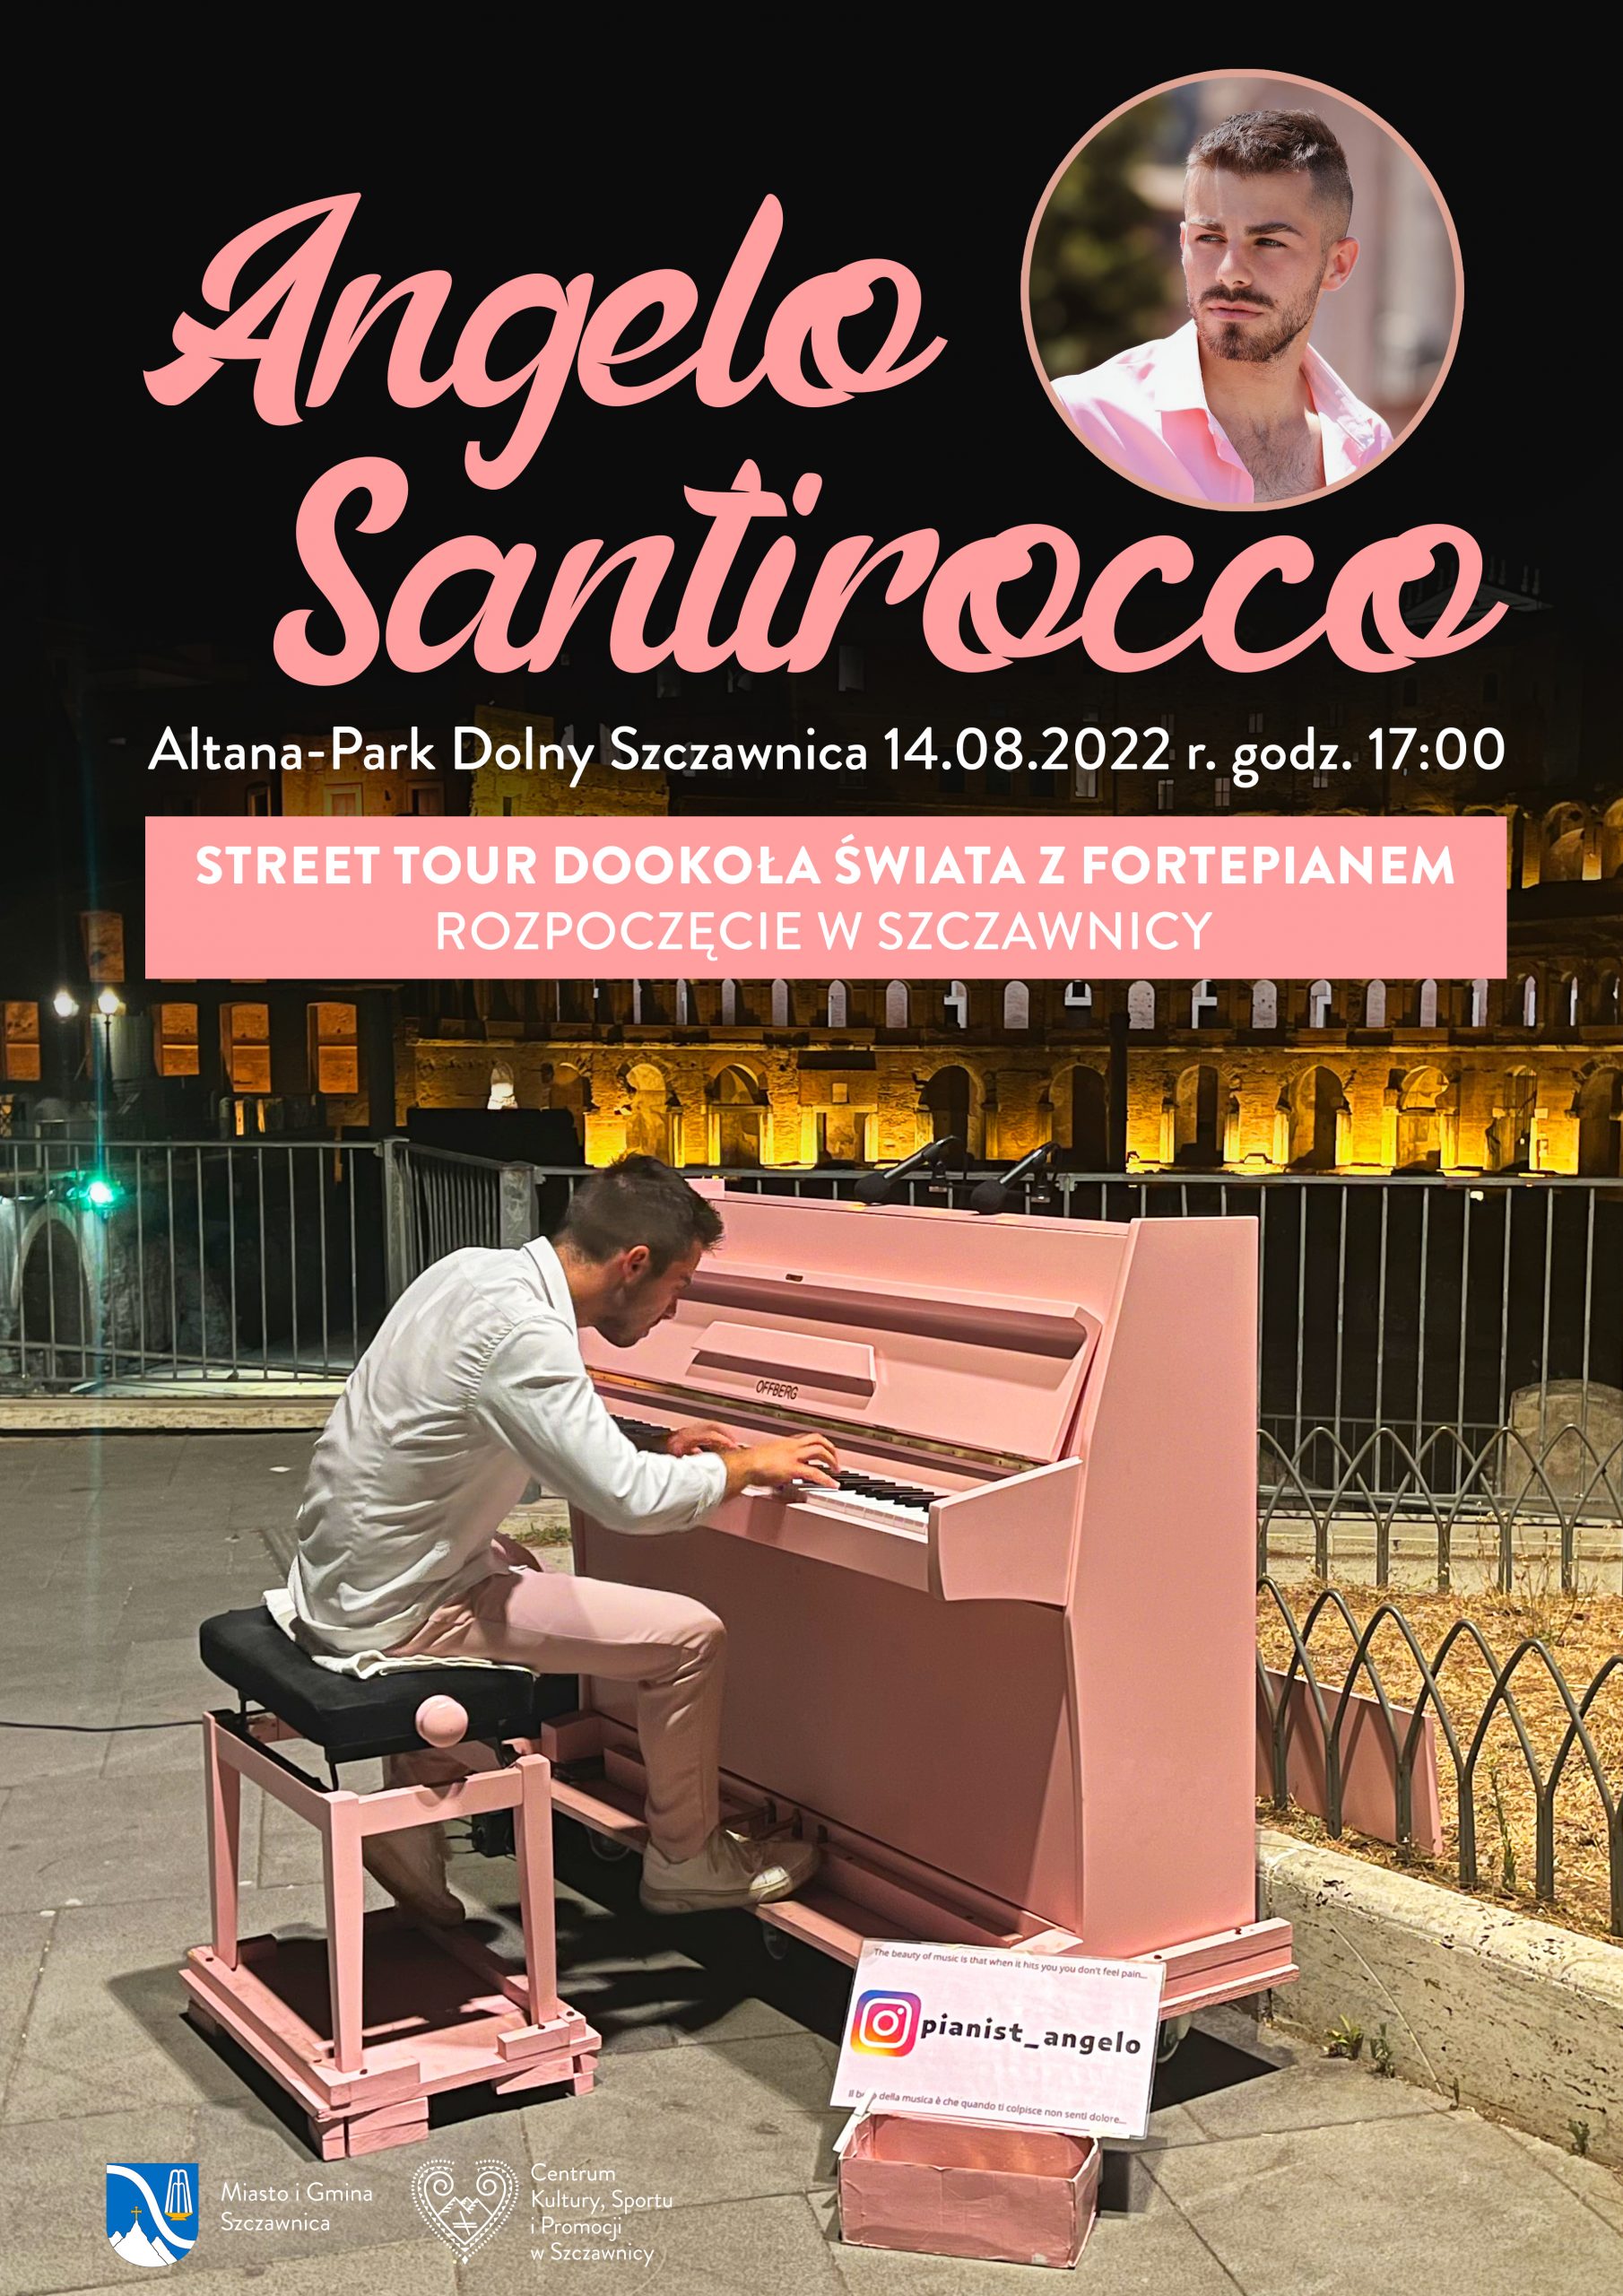 Plakat informujący o koncercie Angelo Santirocco